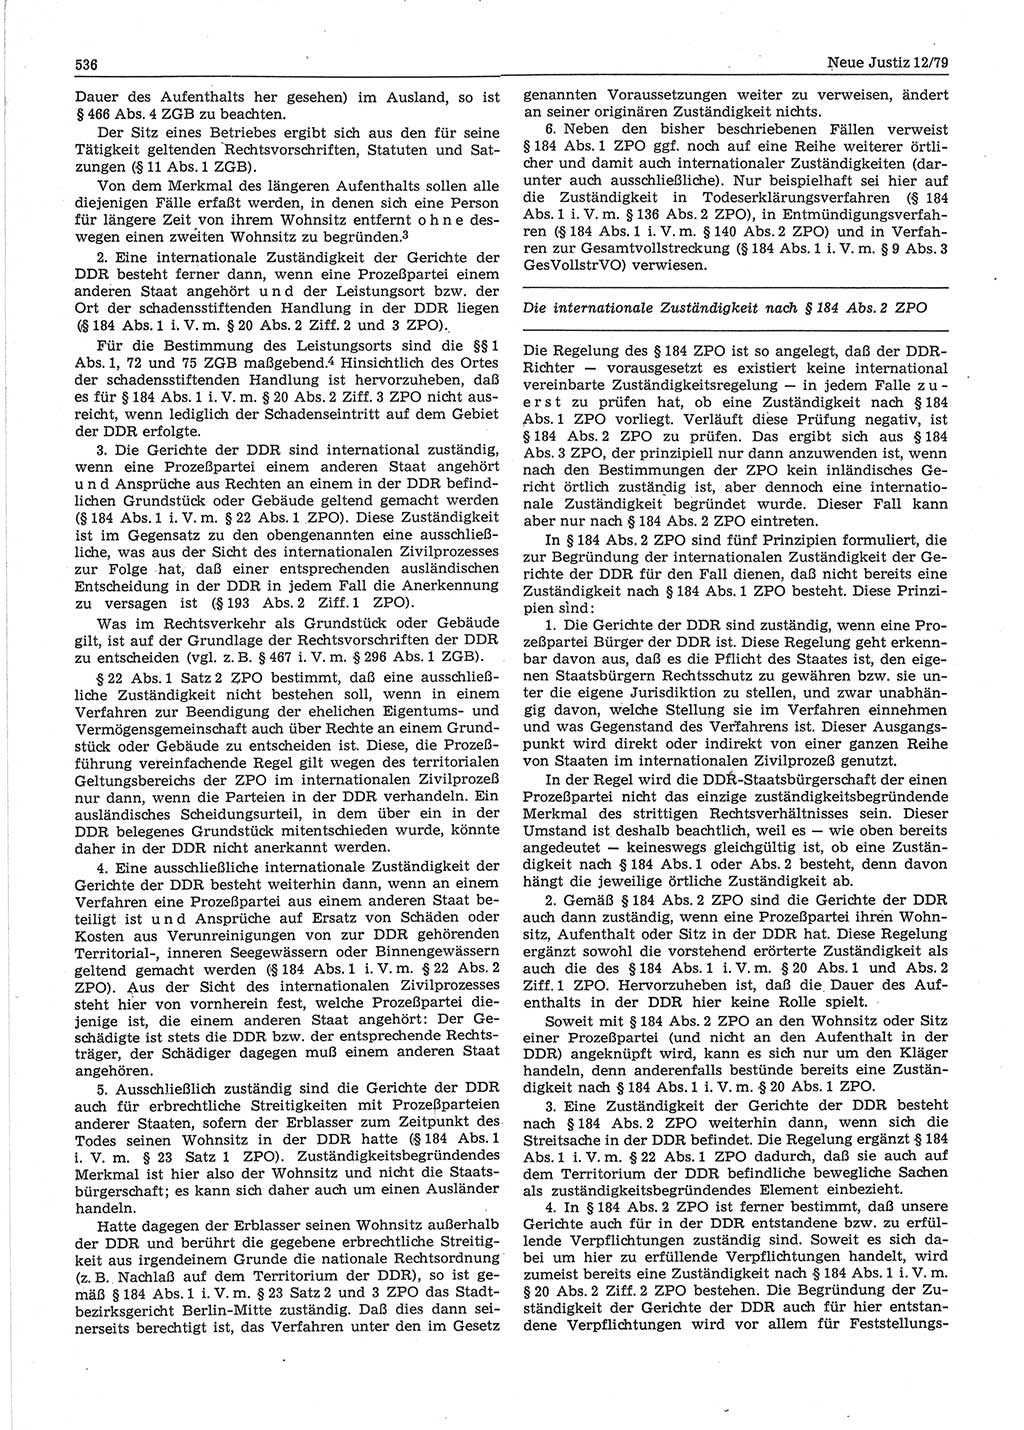 Neue Justiz (NJ), Zeitschrift für sozialistisches Recht und Gesetzlichkeit [Deutsche Demokratische Republik (DDR)], 33. Jahrgang 1979, Seite 536 (NJ DDR 1979, S. 536)